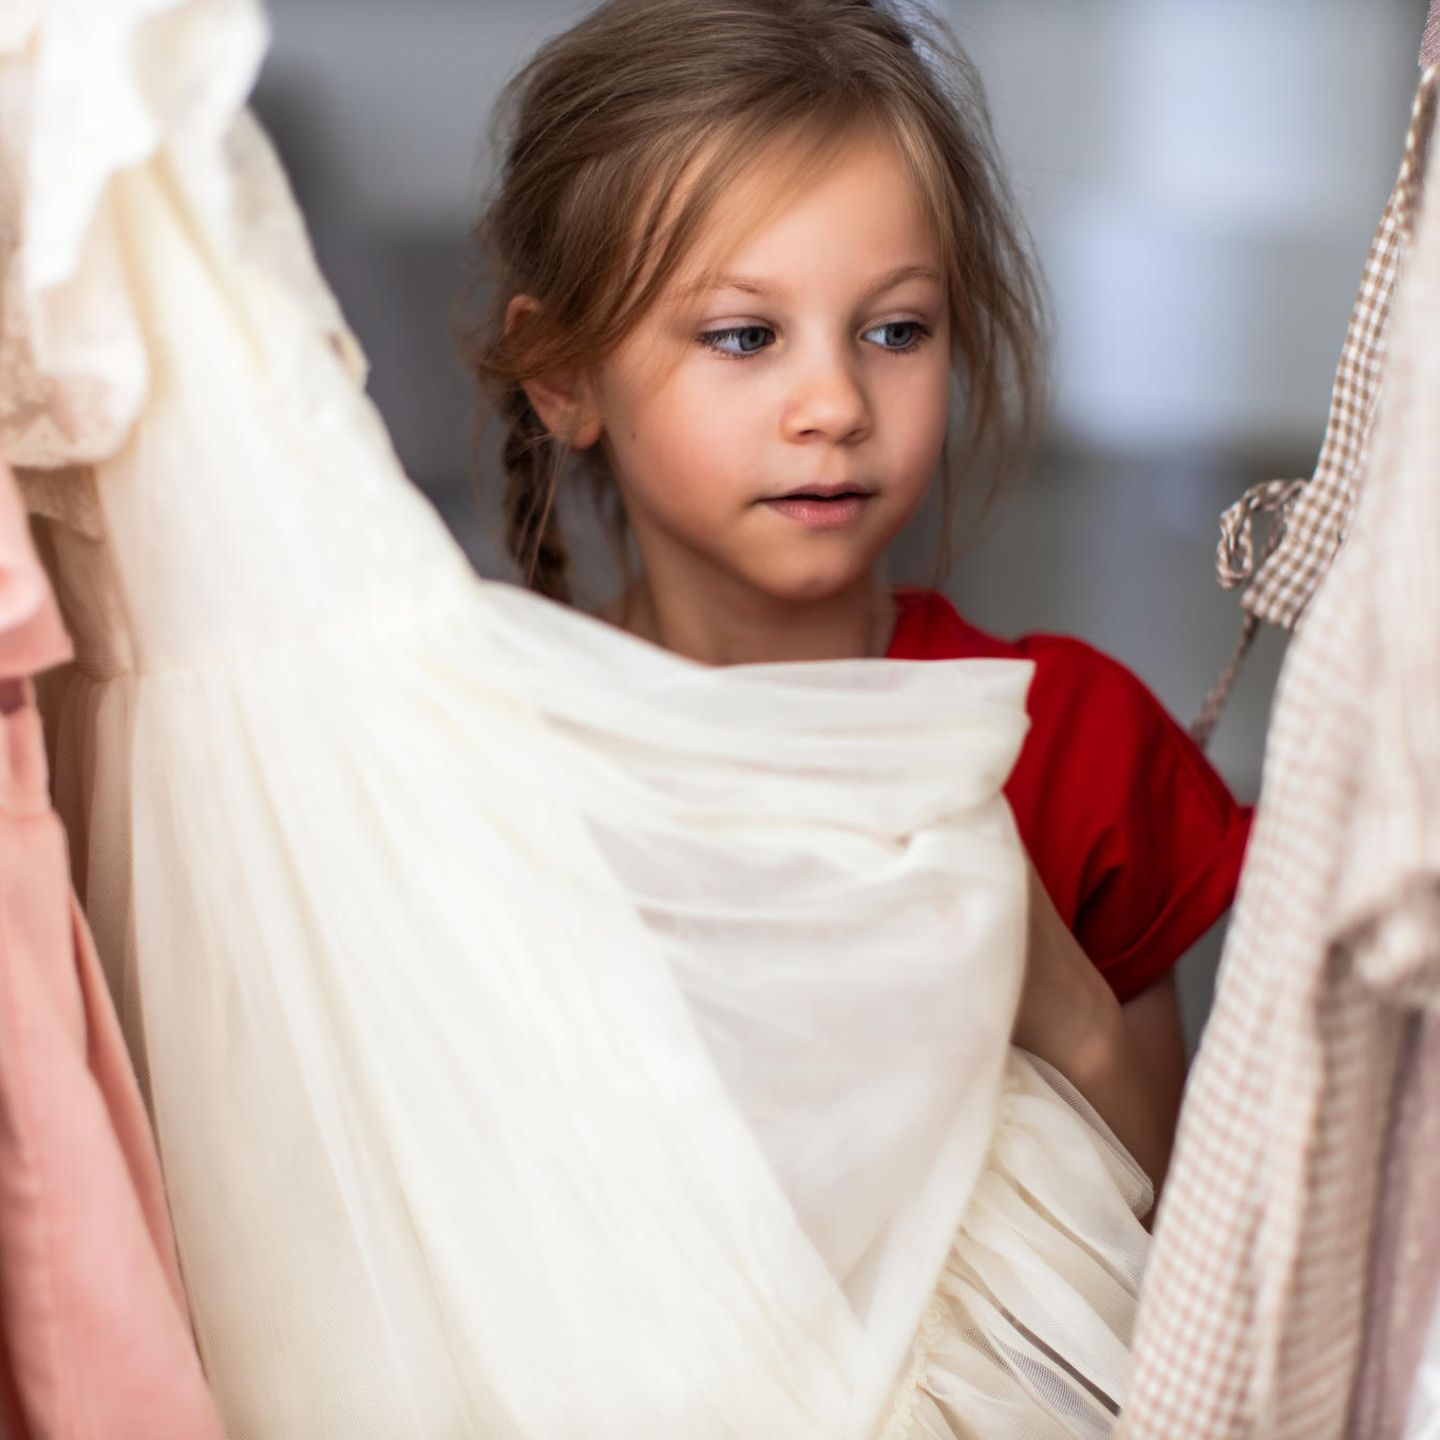 Alltag mit Kind: Mädchen vor Kleiderschrank